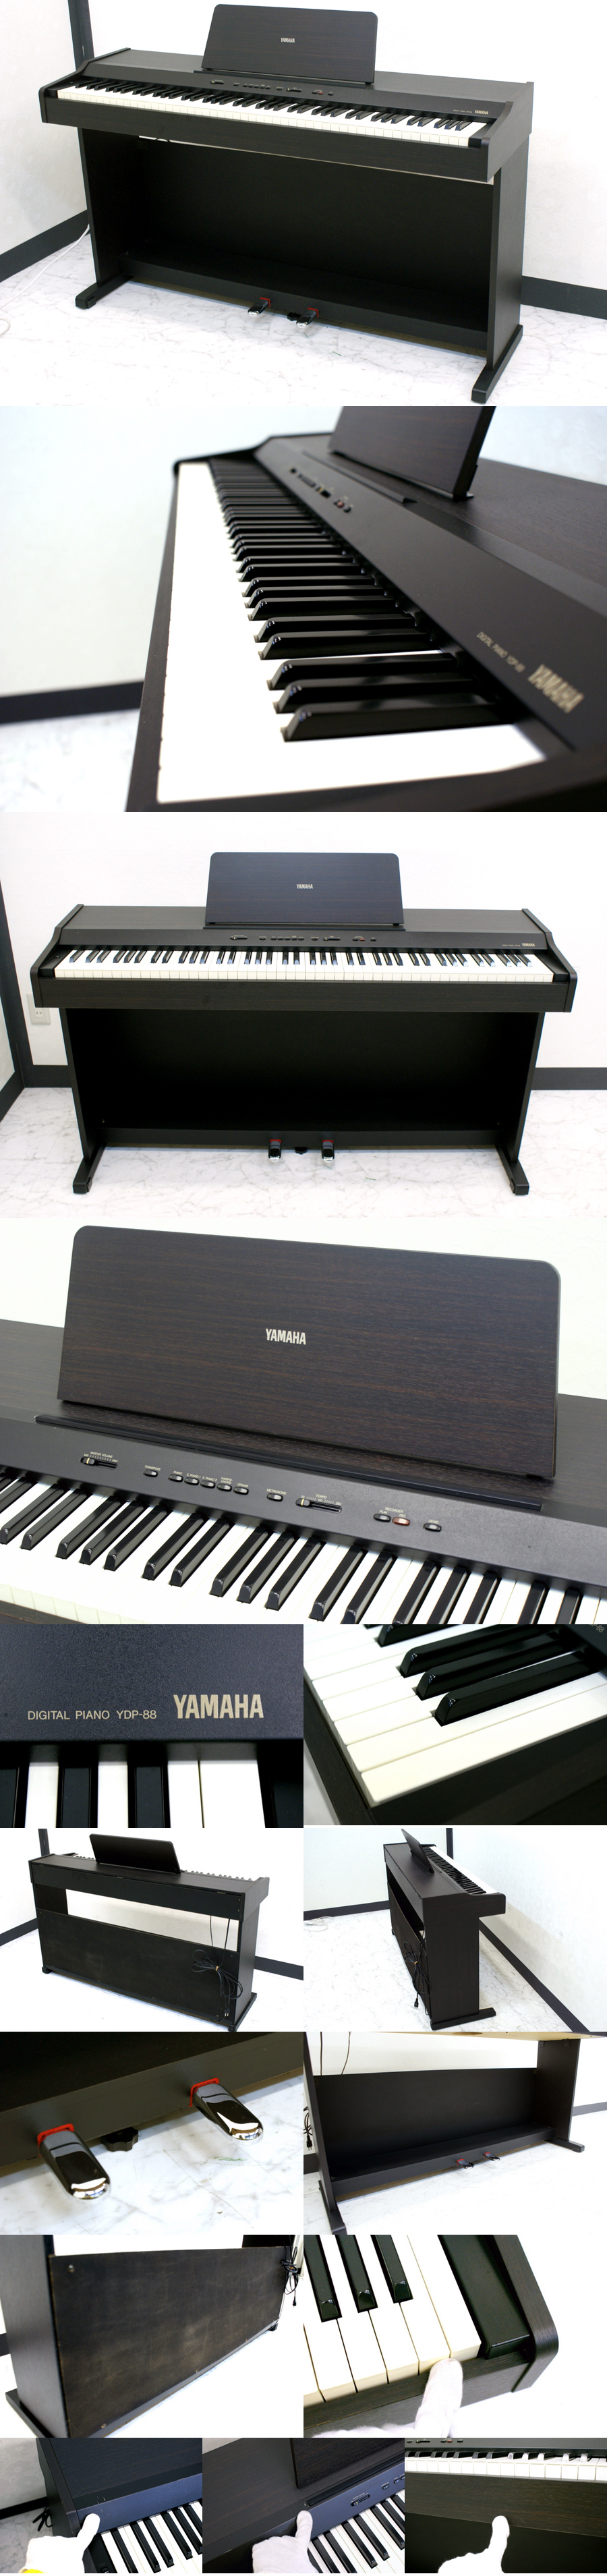 YAMAHA デジタル電子ピアノ 買取のリサイクルハンター! YDP-88 88鍵